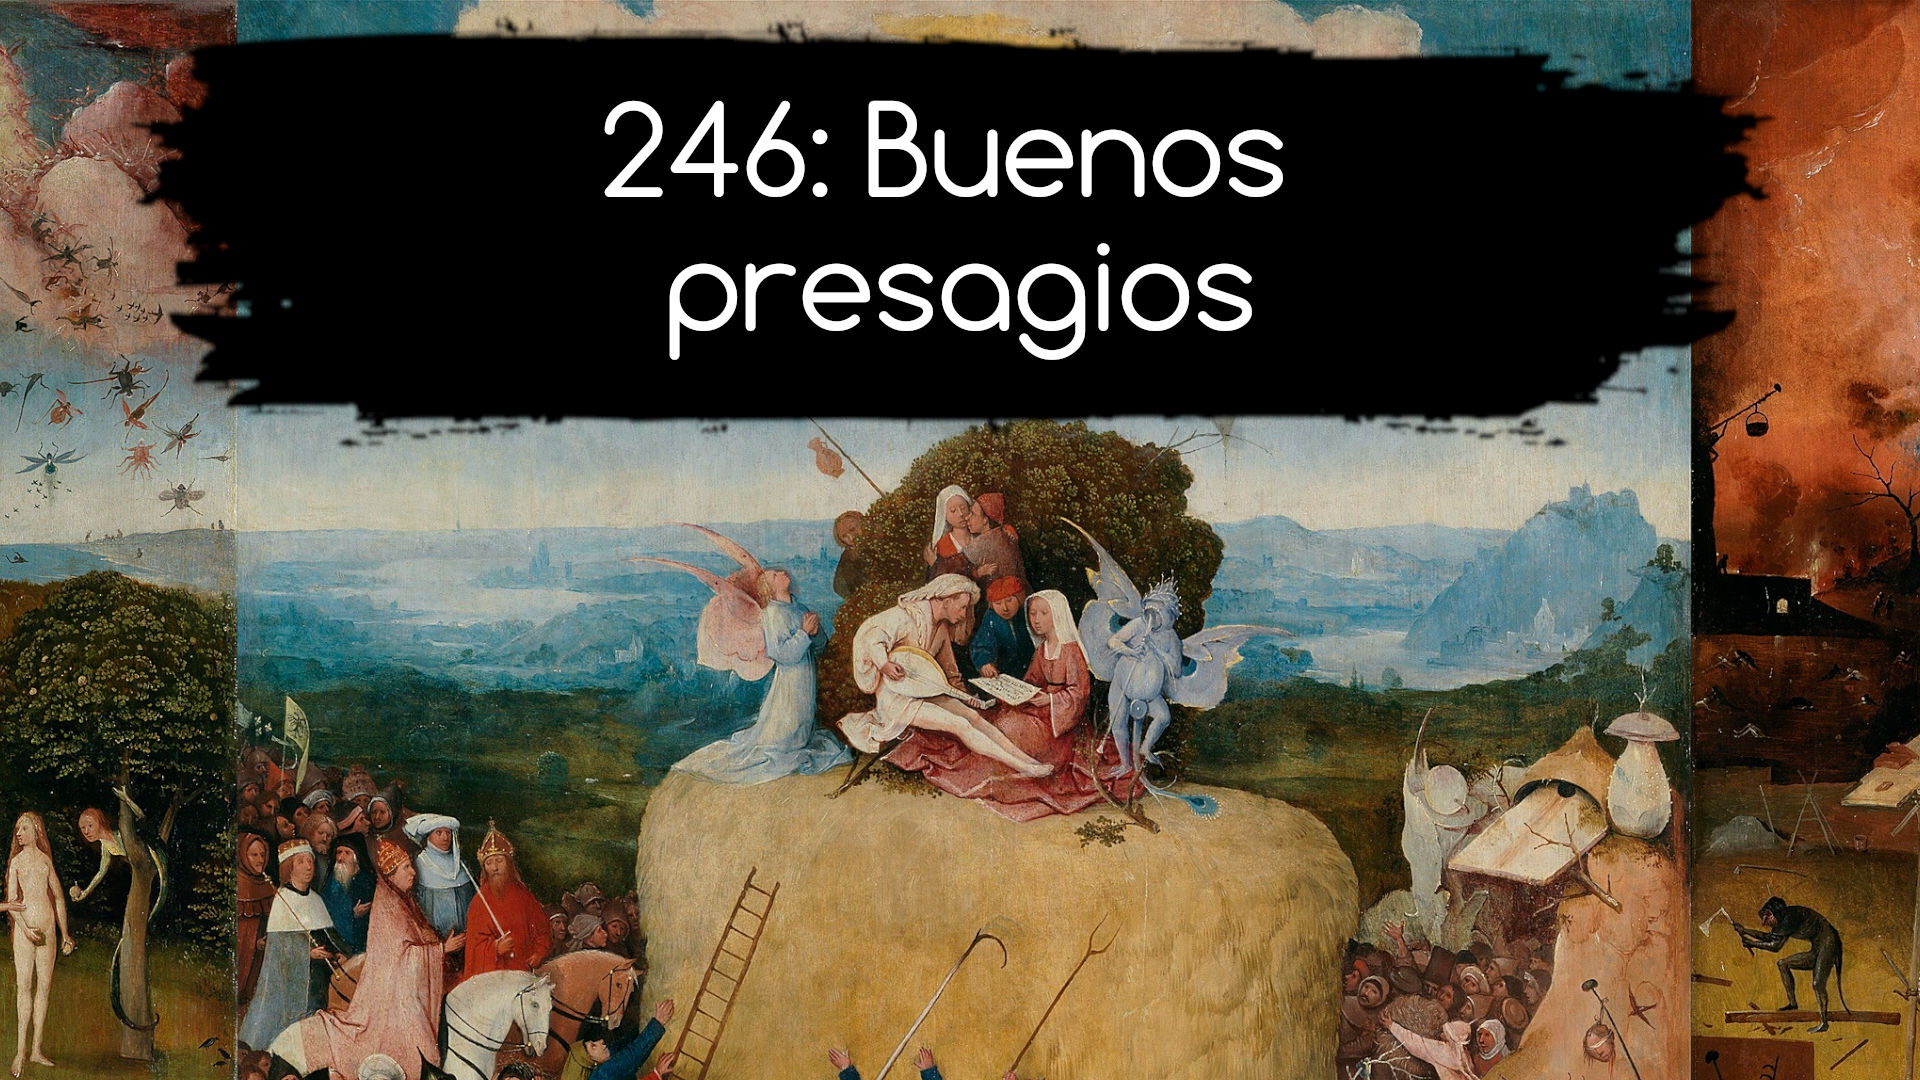 256: Buenos presagios